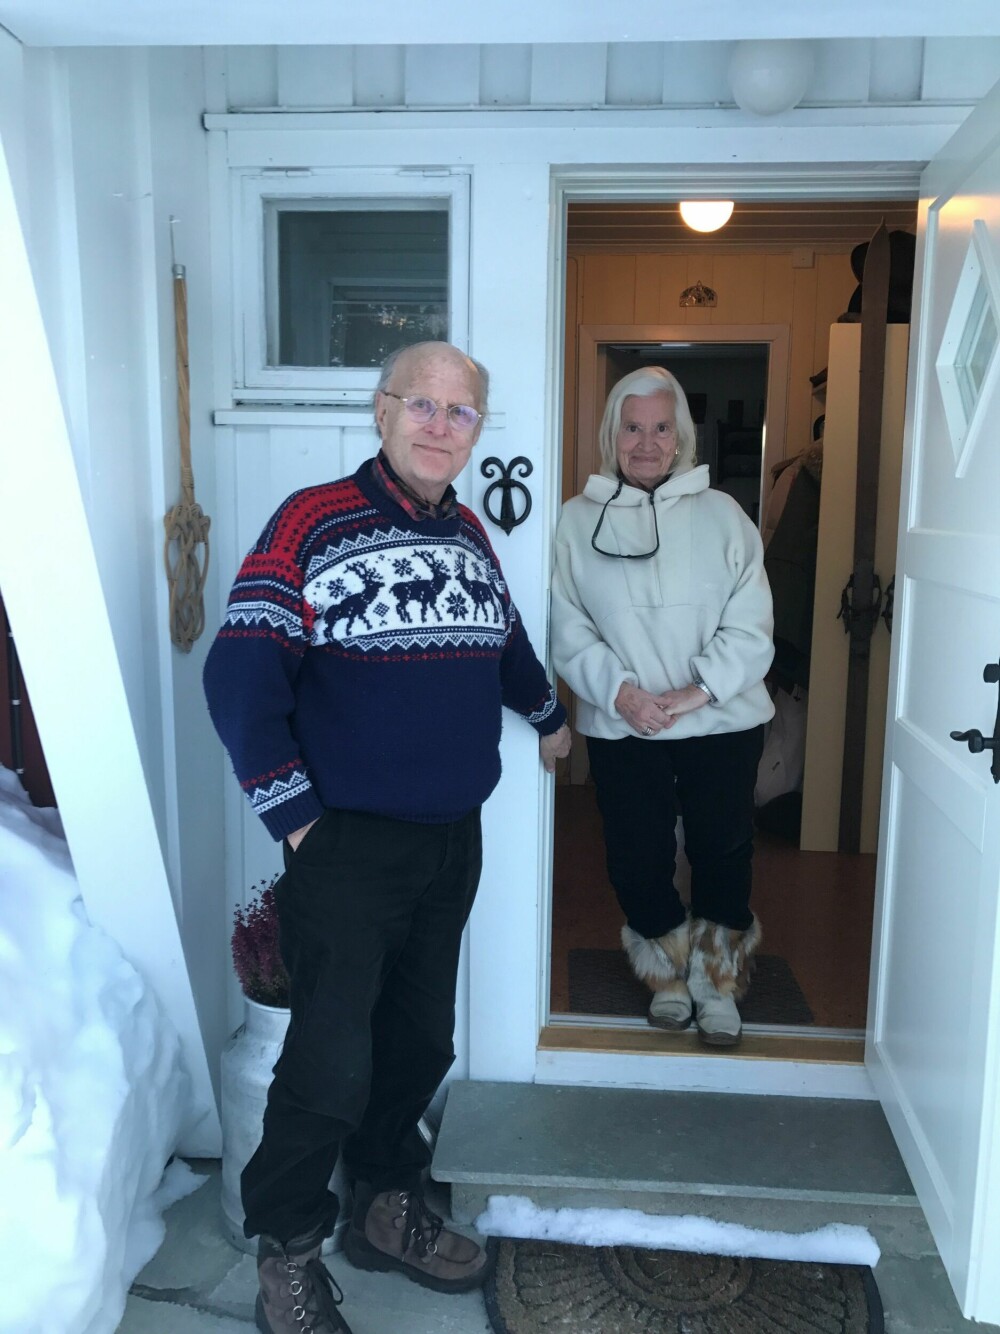 <b>ET AKTIVT PAR:</b> Kari og ektemannen Tore på hytta i Valdres. De stortrives i hverandres selskap. Bildet er tatt av Tores datter.